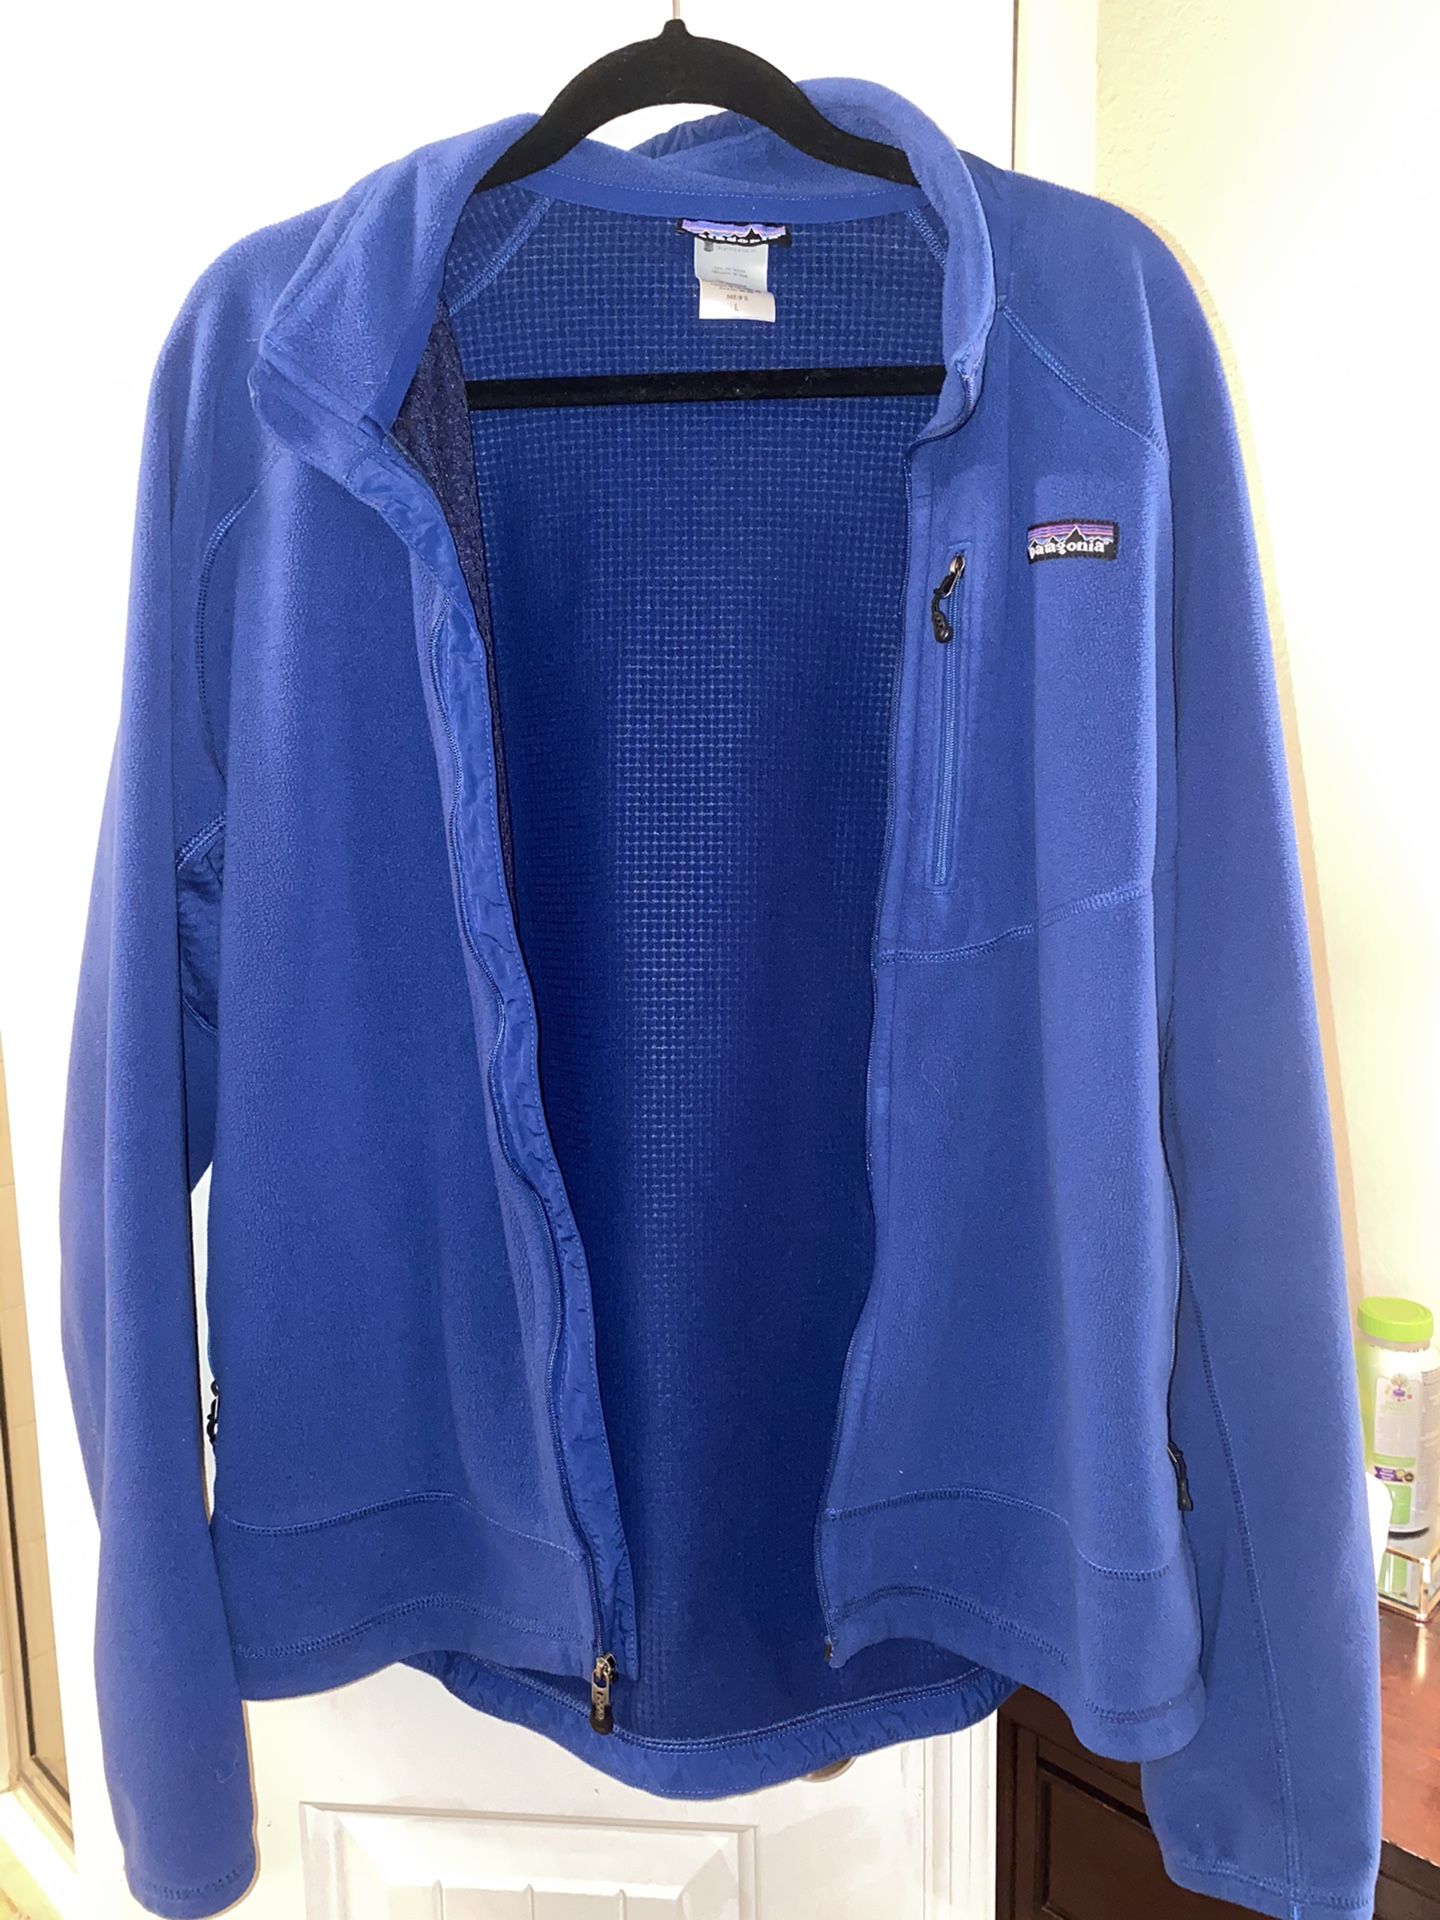 Patagonia Men’s Royal Blue Fleece Zip Up Jacket